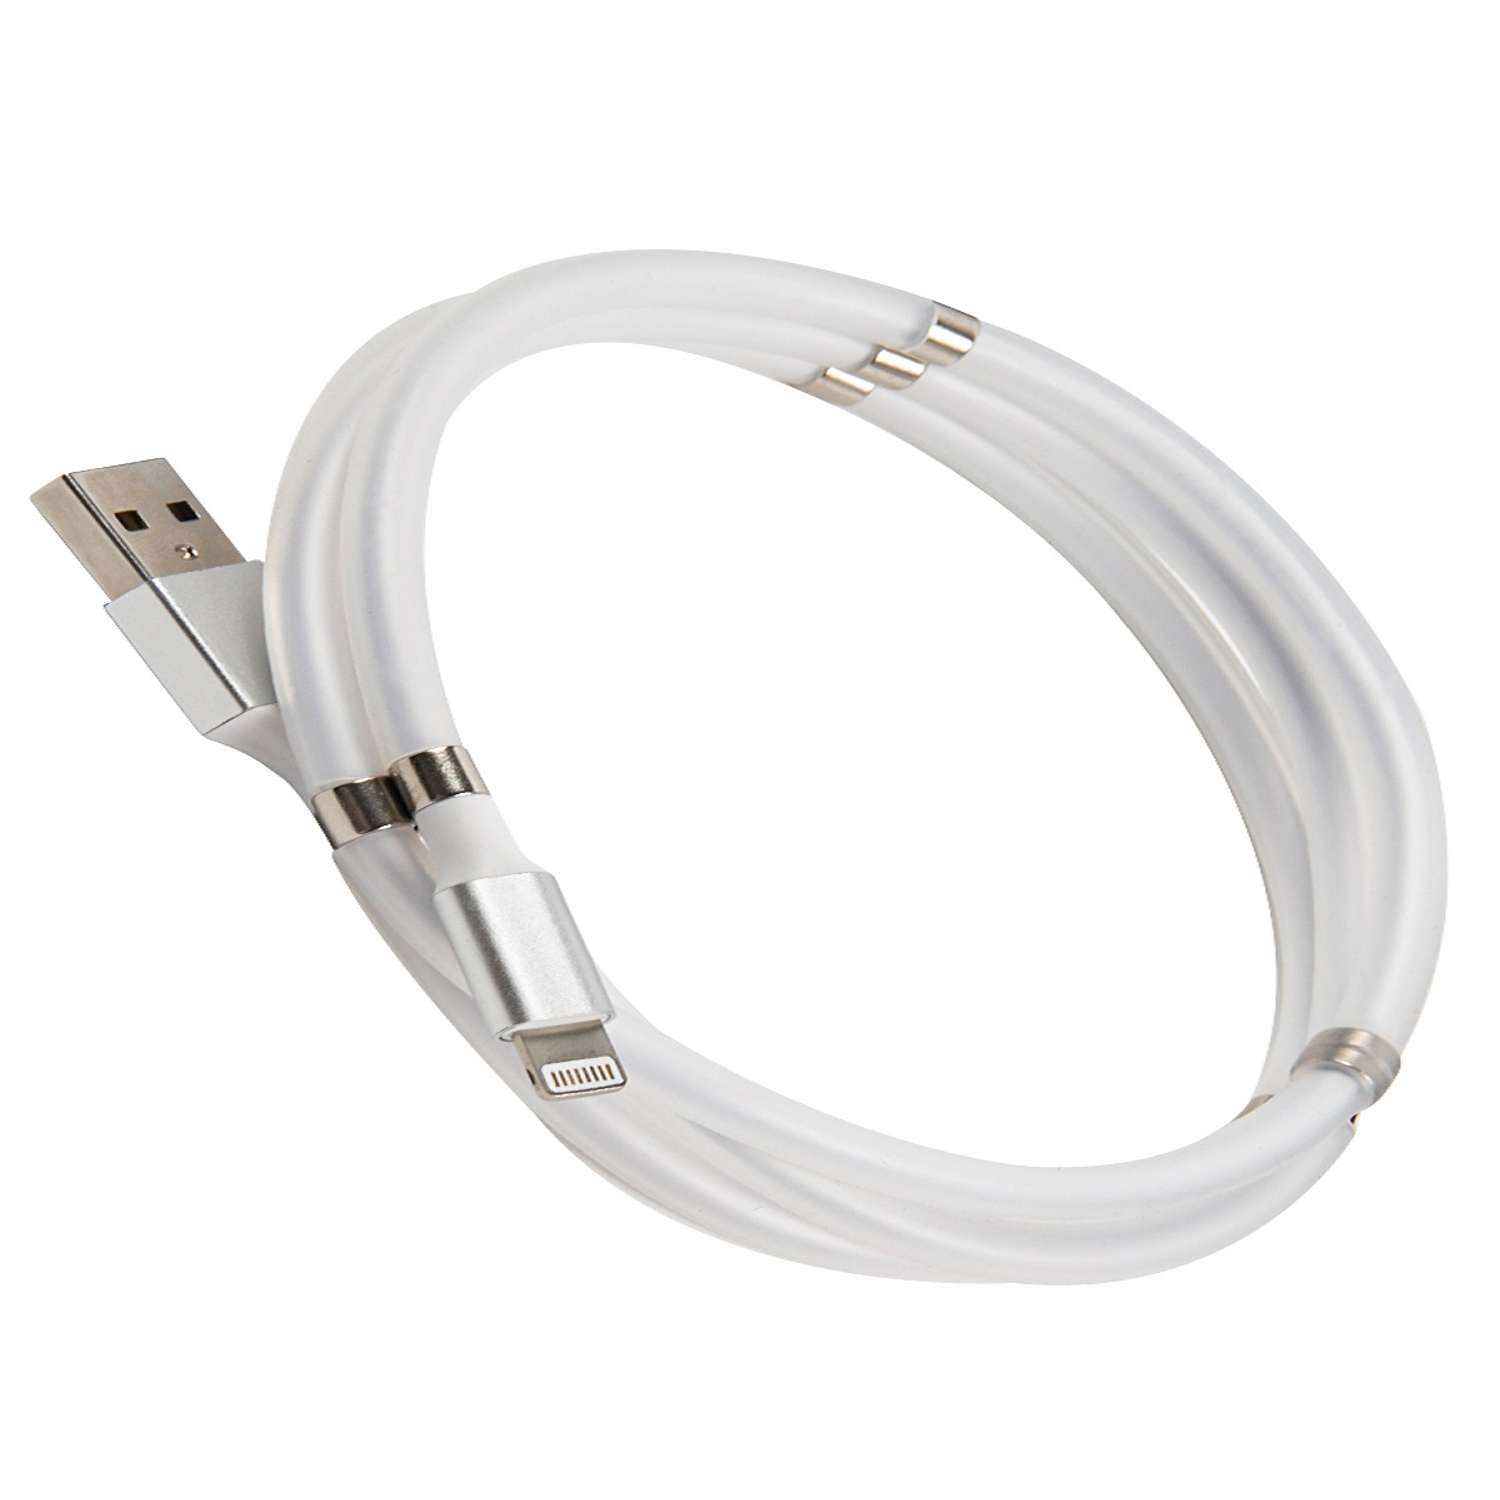 Дата-кабель mObility USB - Lightning белый скручивание на магнитах - фото 1